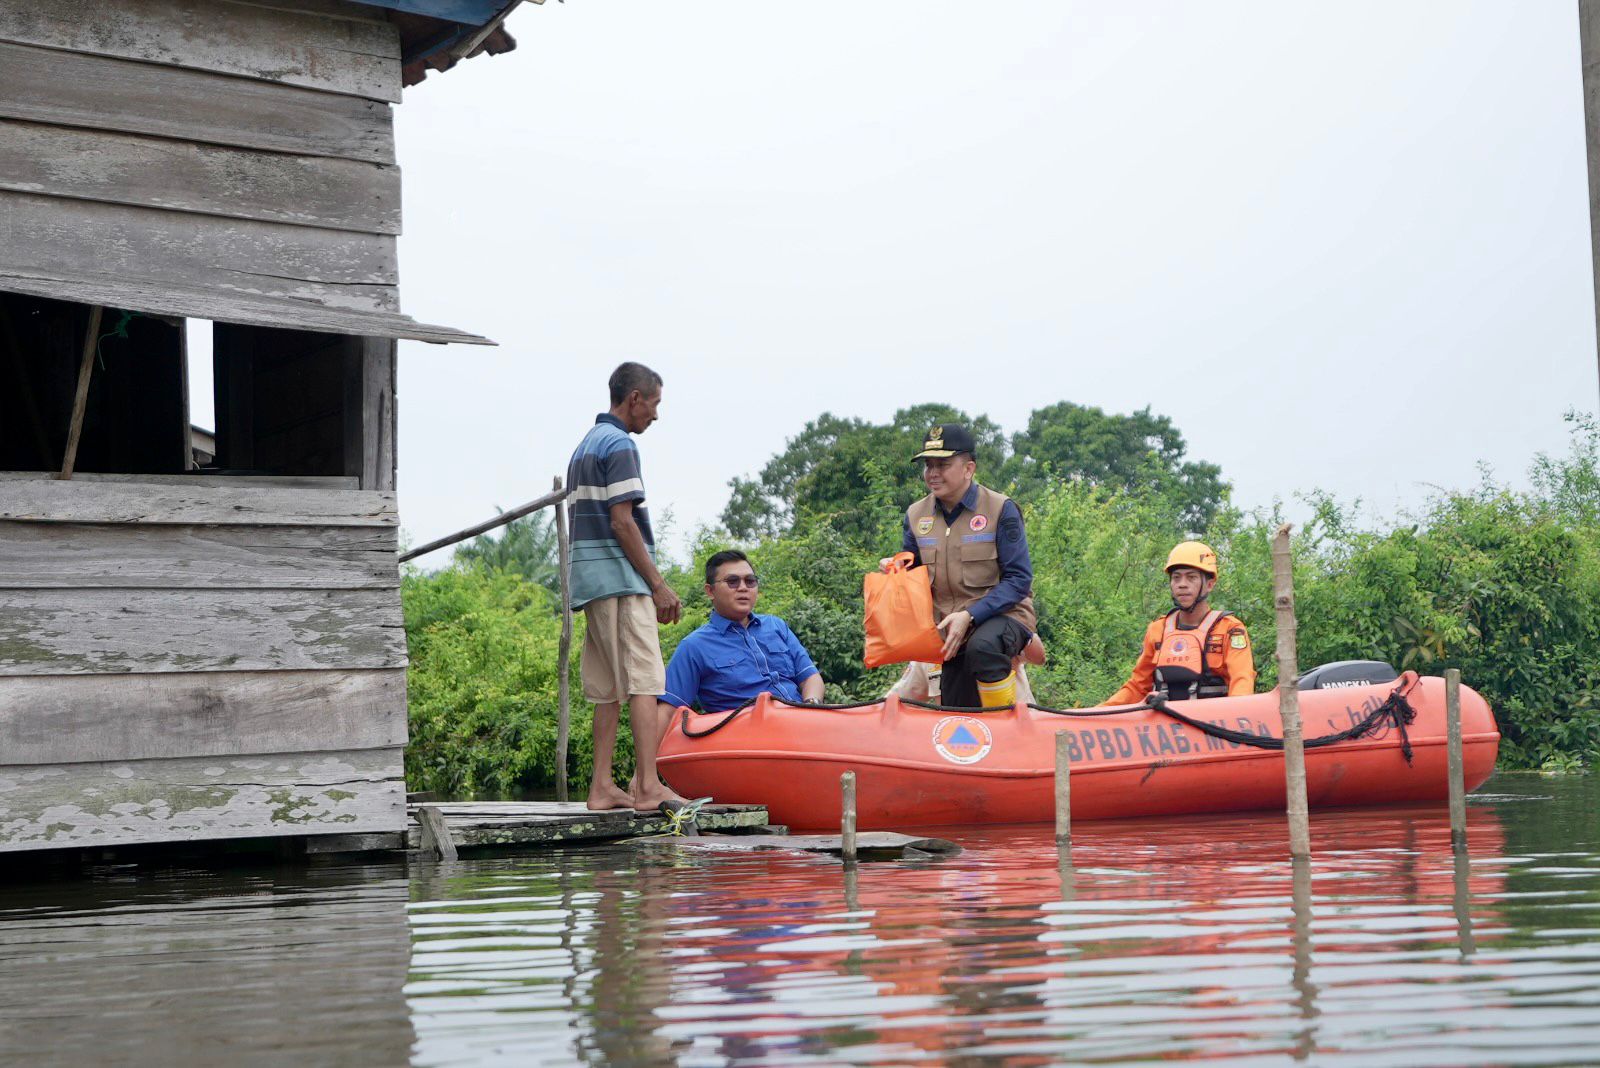 Tinjau Lokasi Banjir di Muba, Pj Gubernur Antar Langsung Bantuan ke Rumah Warga Gunakan Perahu Karet